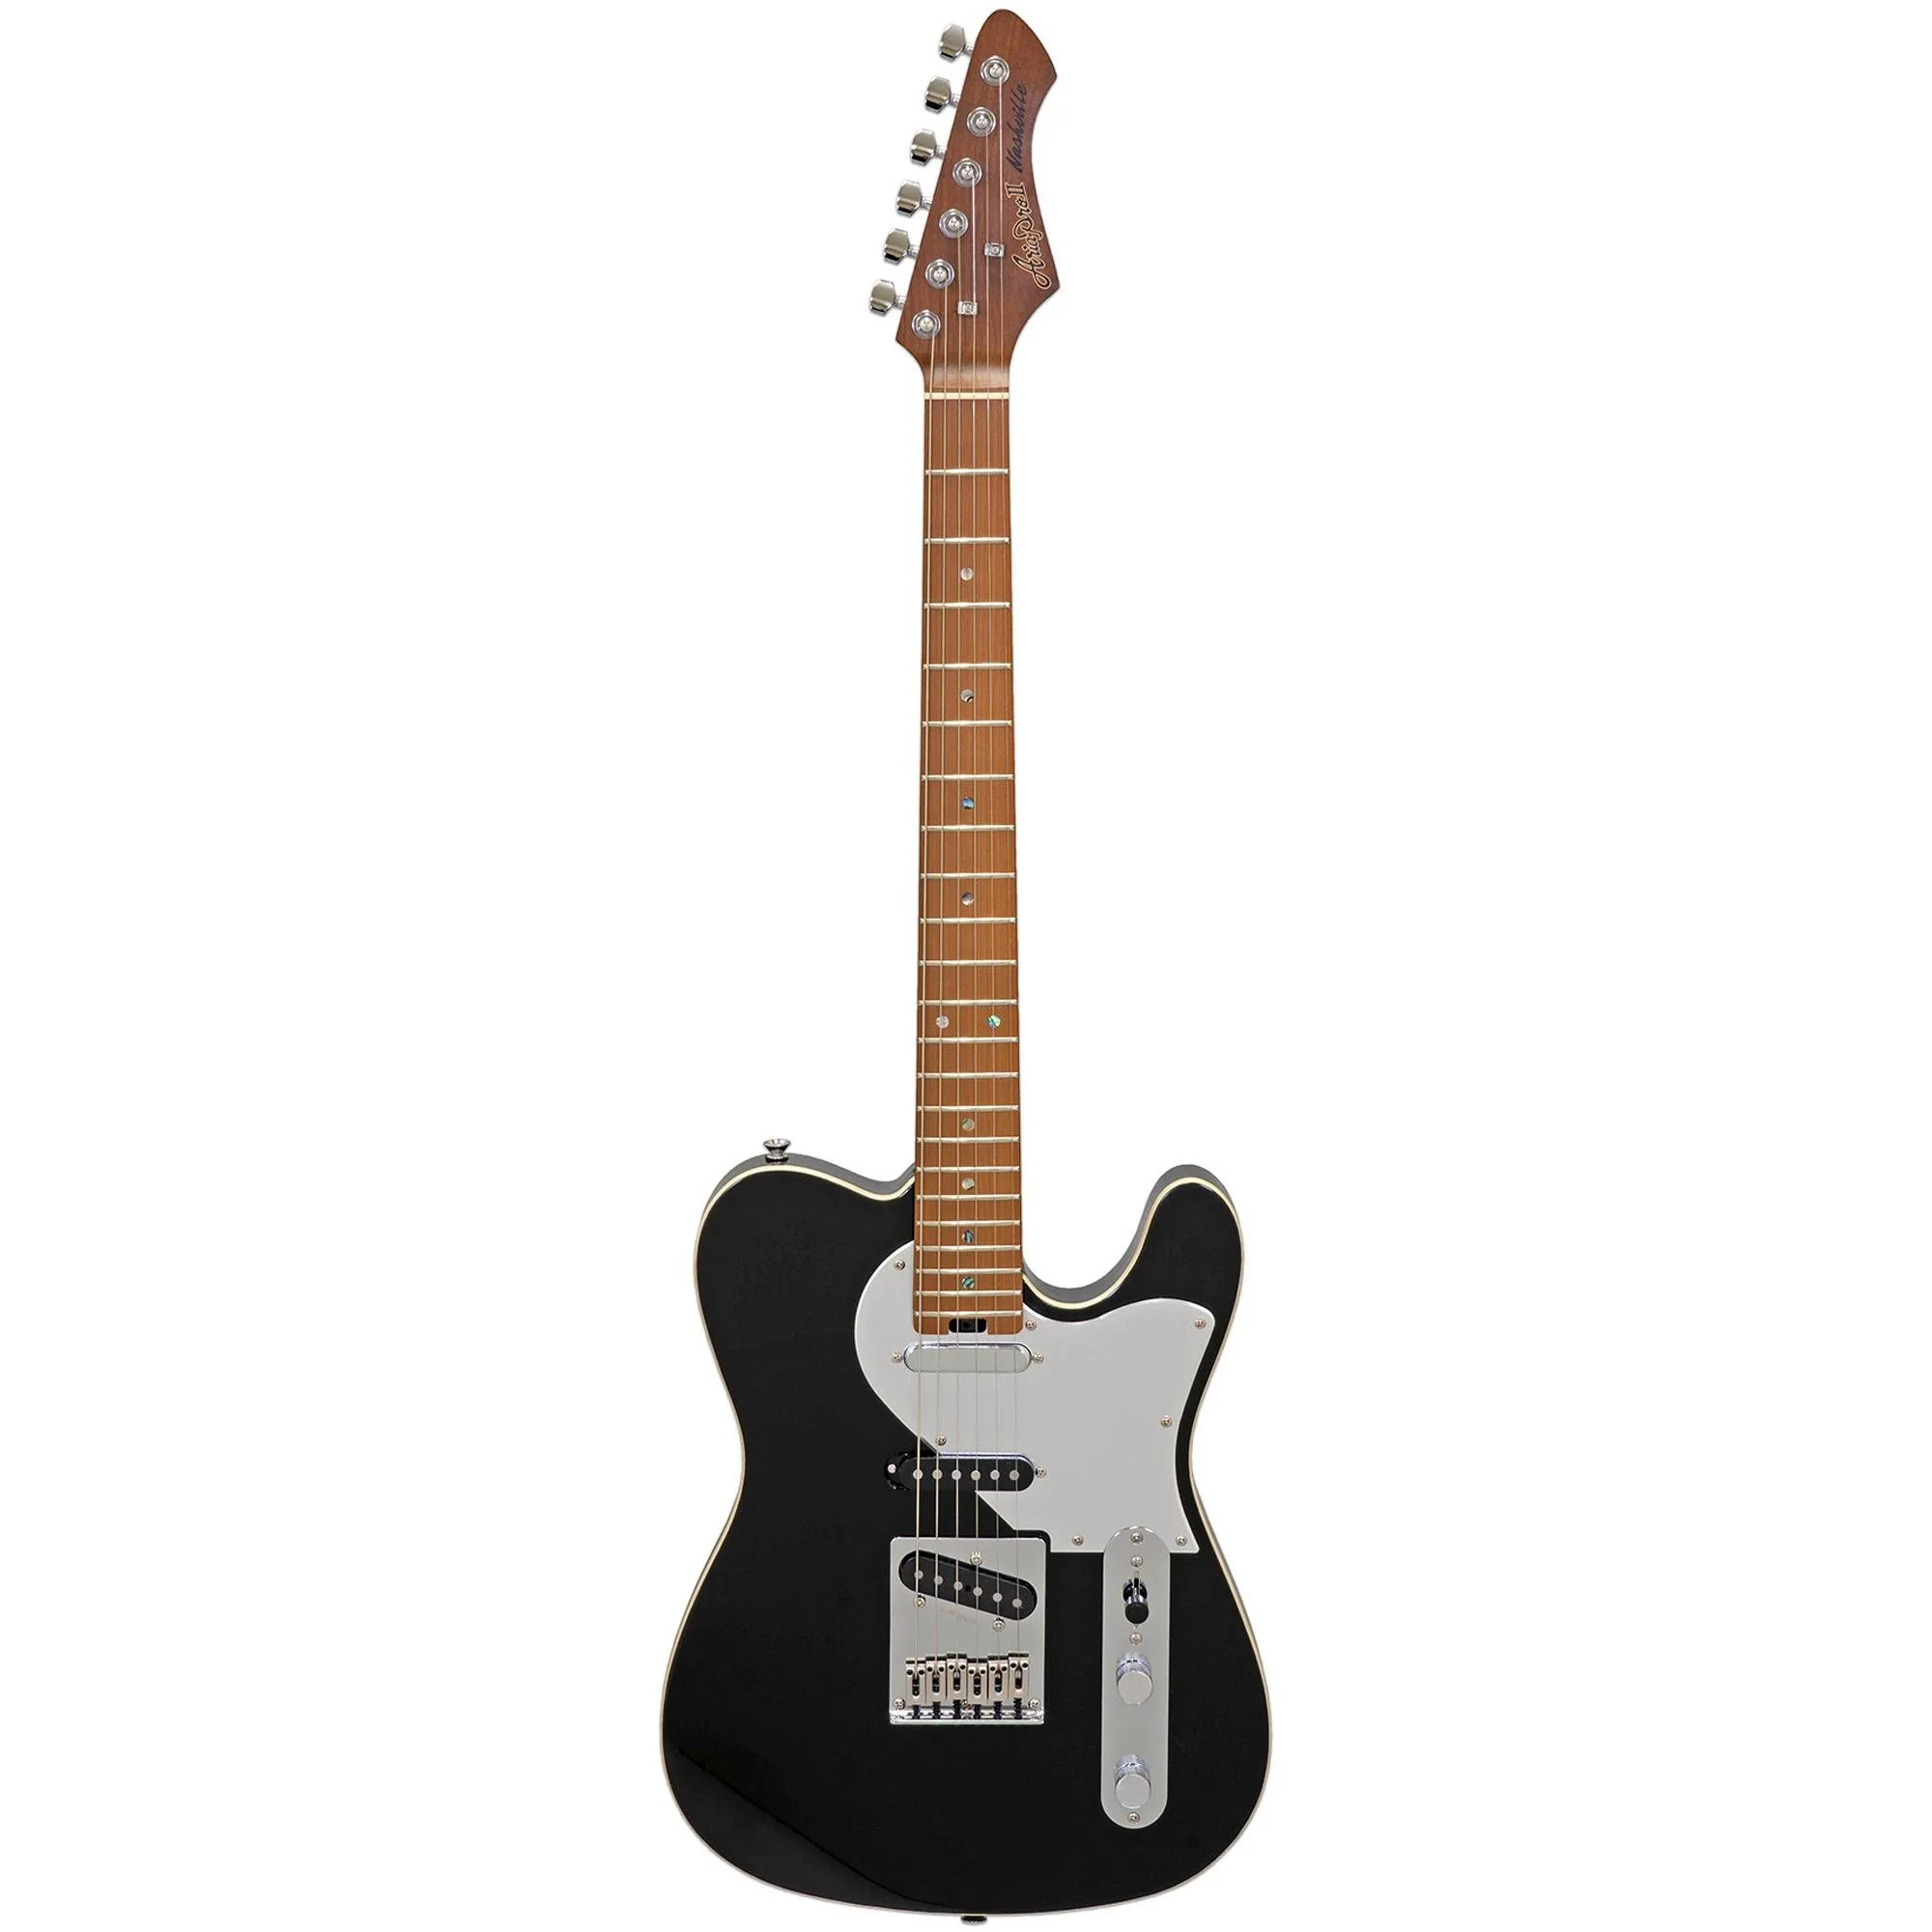 Guitarra Aria Pro II 615-GTR Nashville Black por 0,00 à vista no boleto/pix ou parcele em até 1x sem juros. Compre na loja Mundomax!